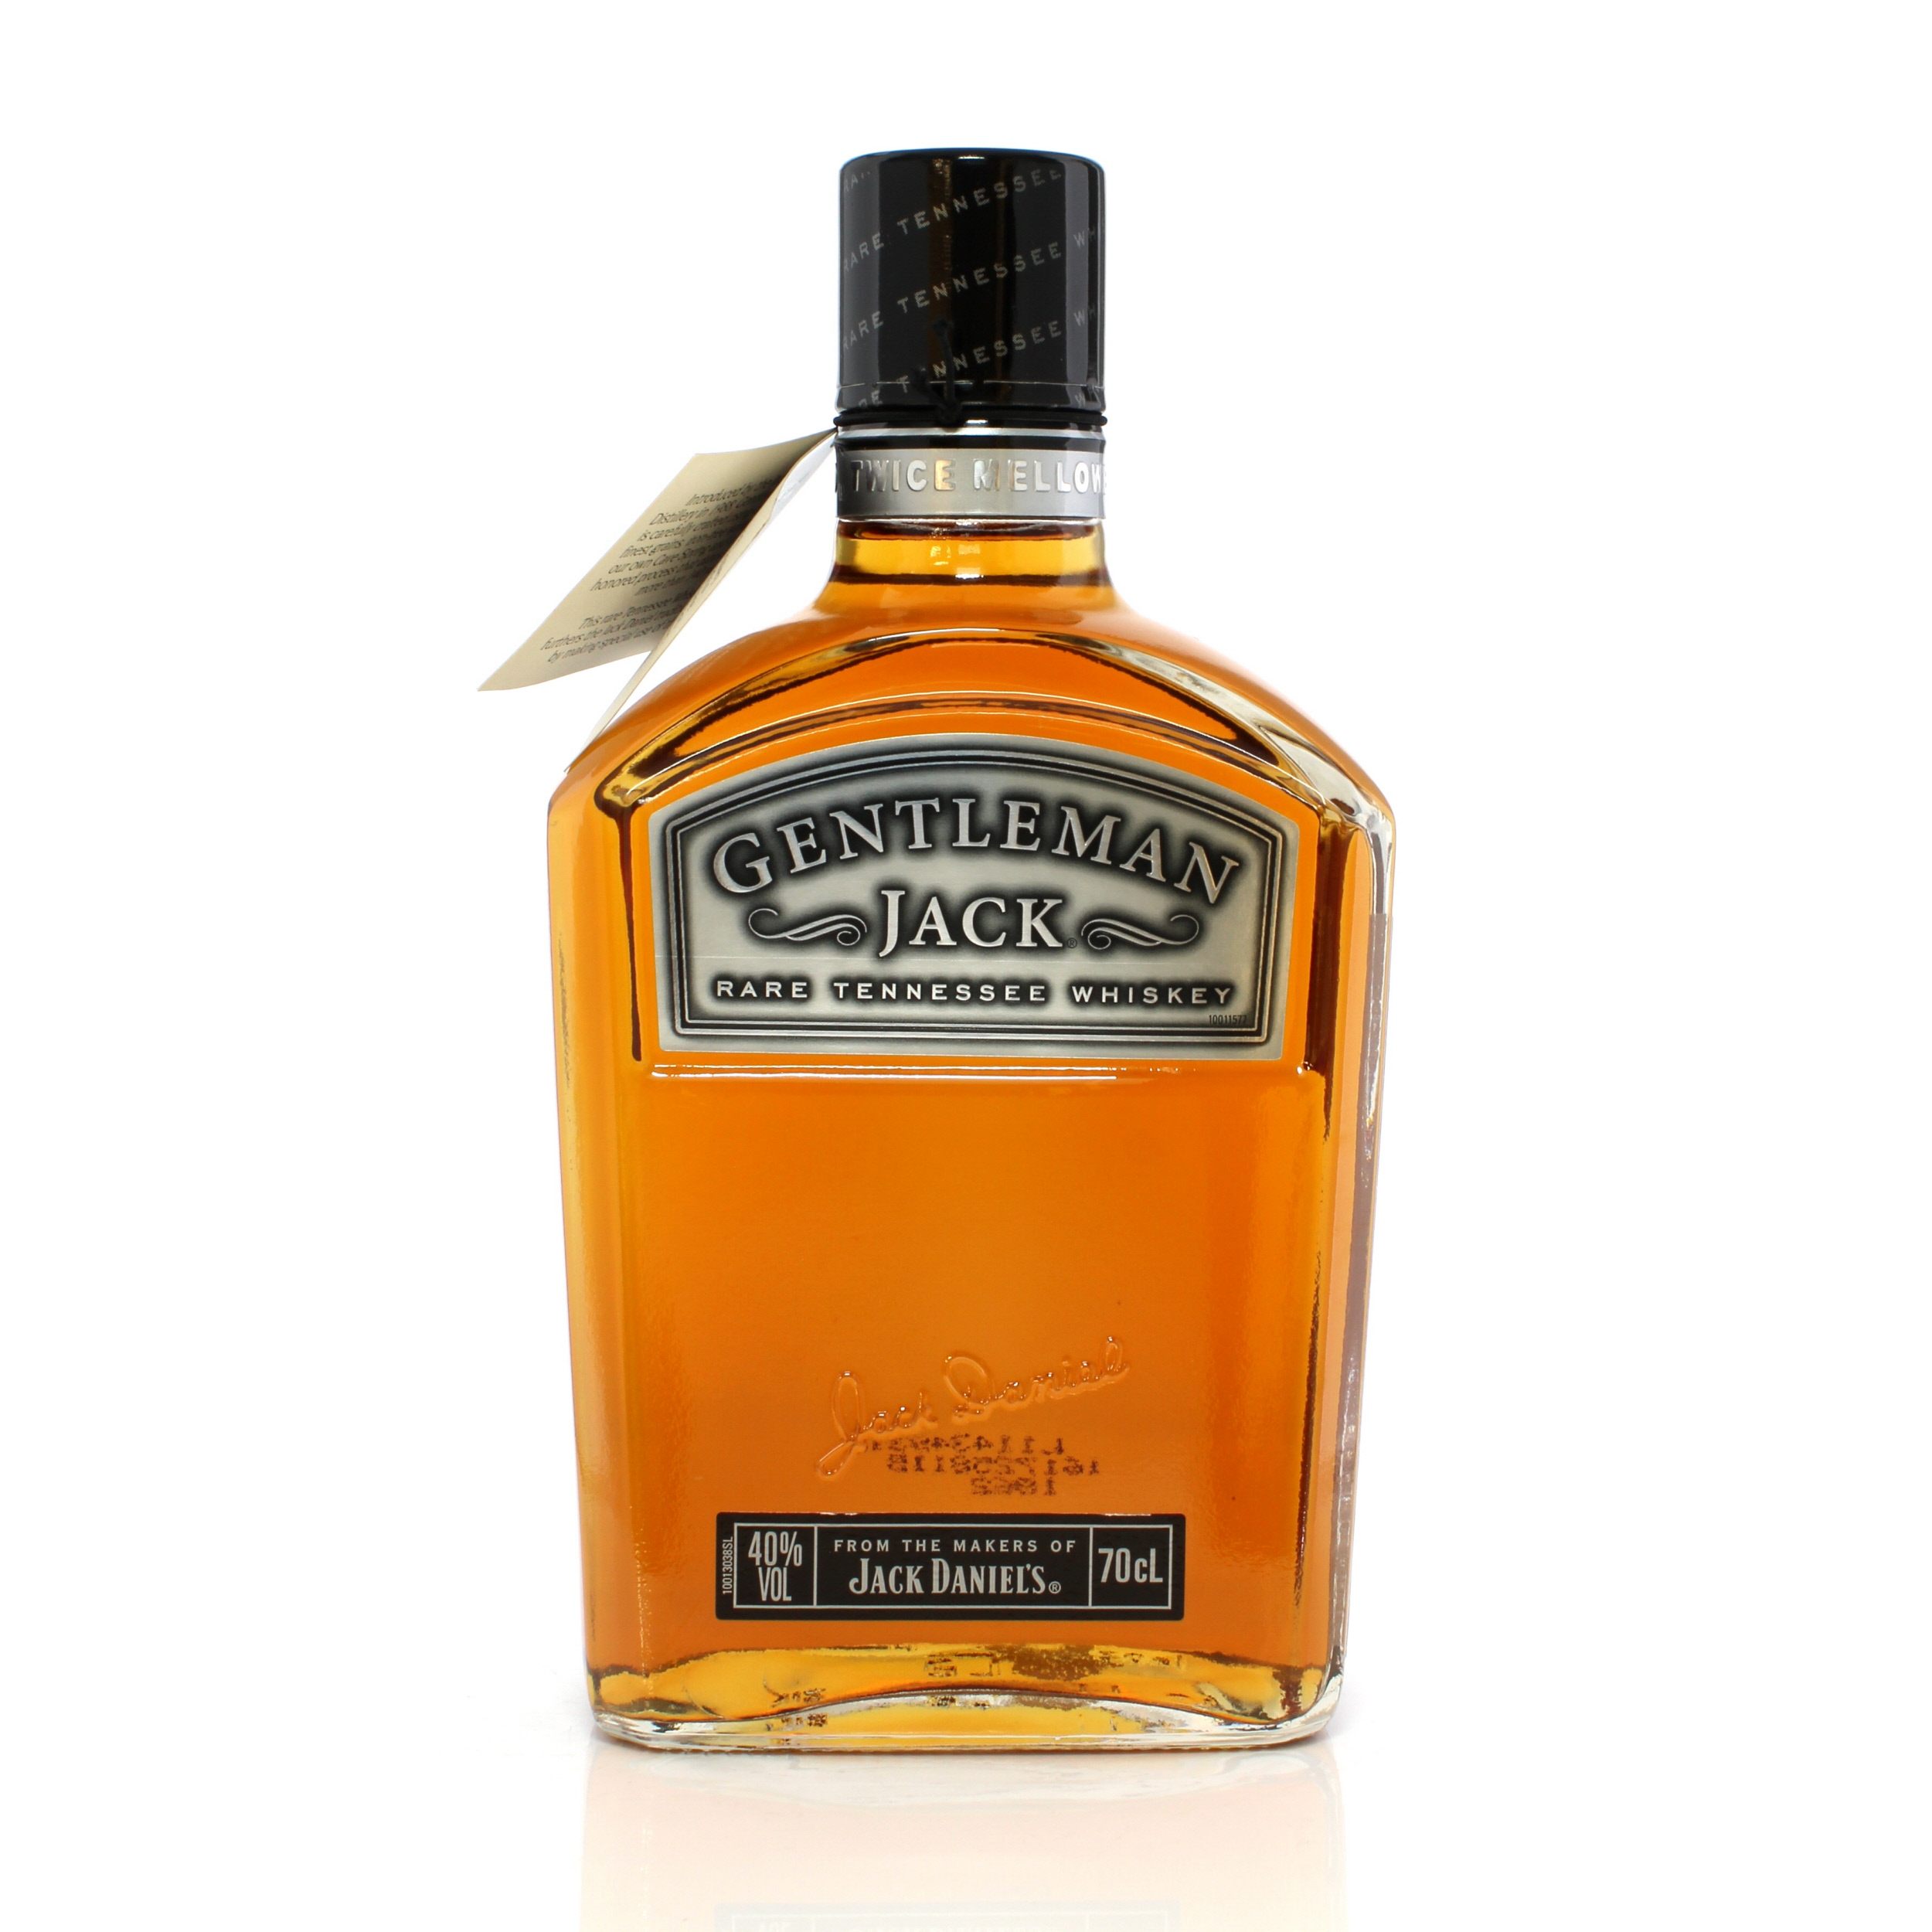 Jack Daniel's Gentleman Jack Auction A23424 | The Whisky Shop Auctions